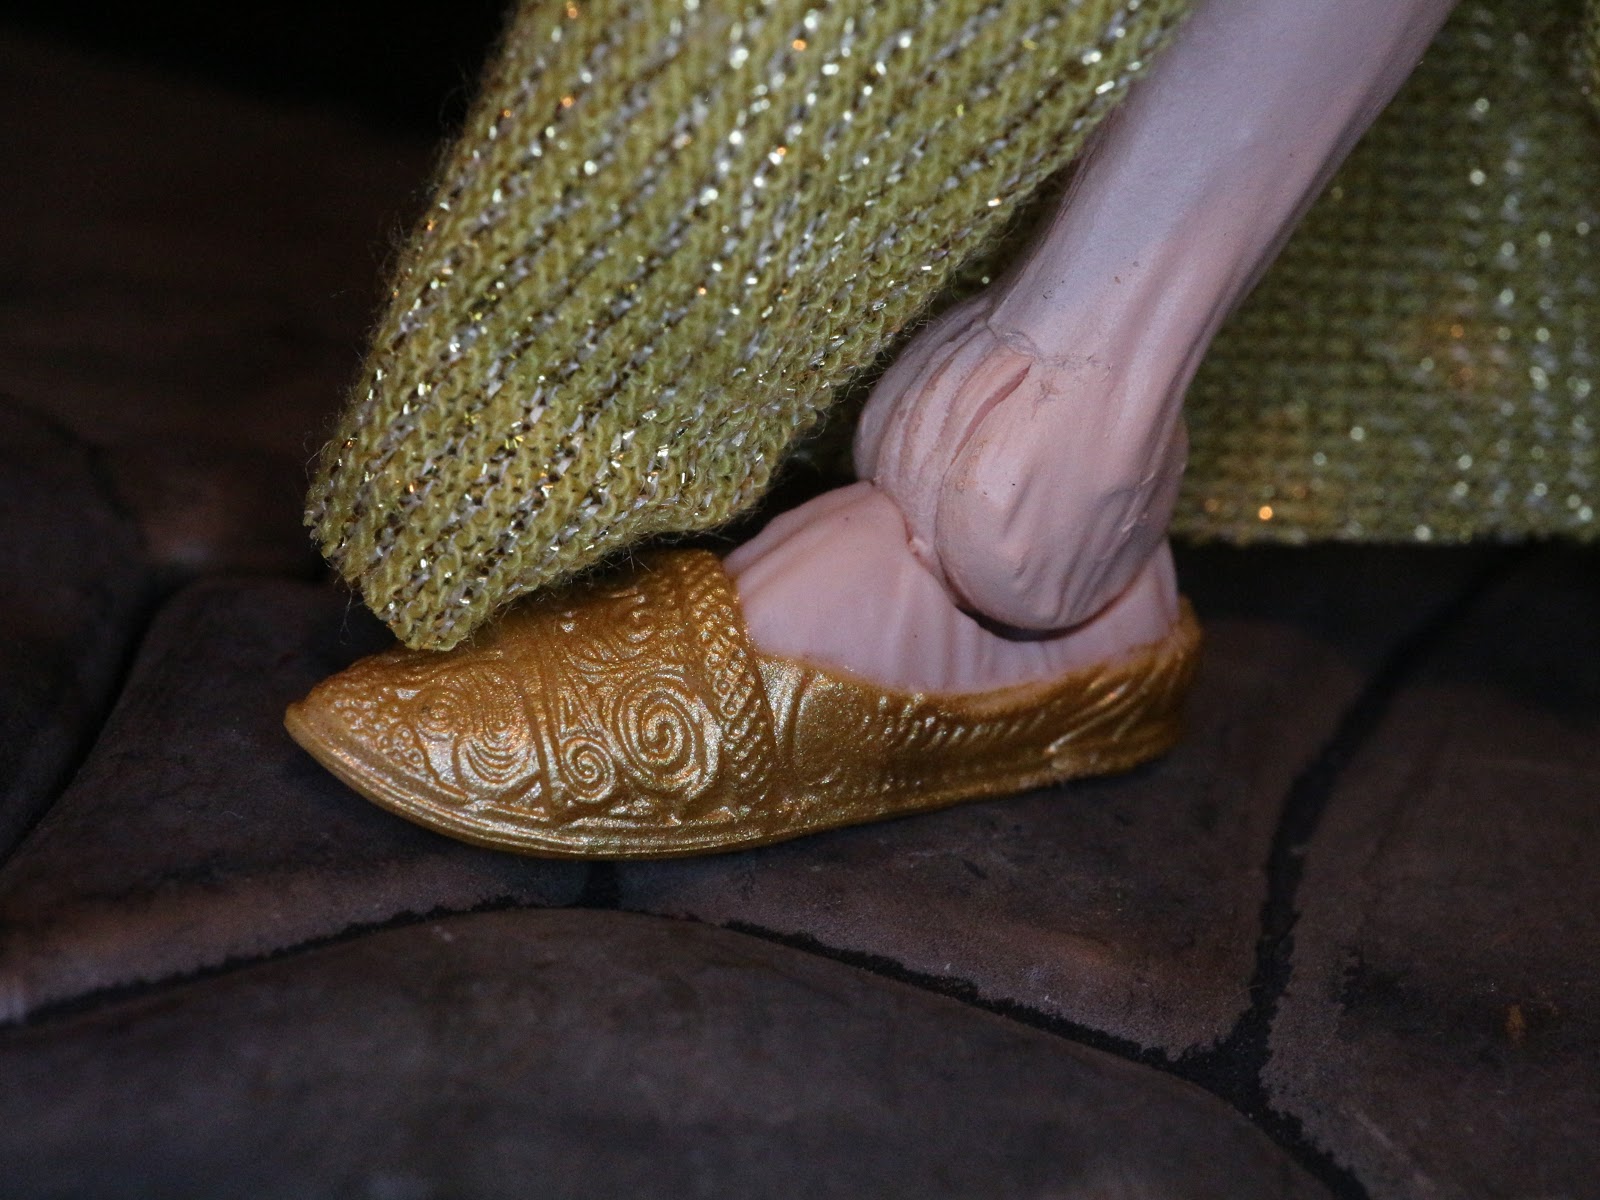 snoke slippers